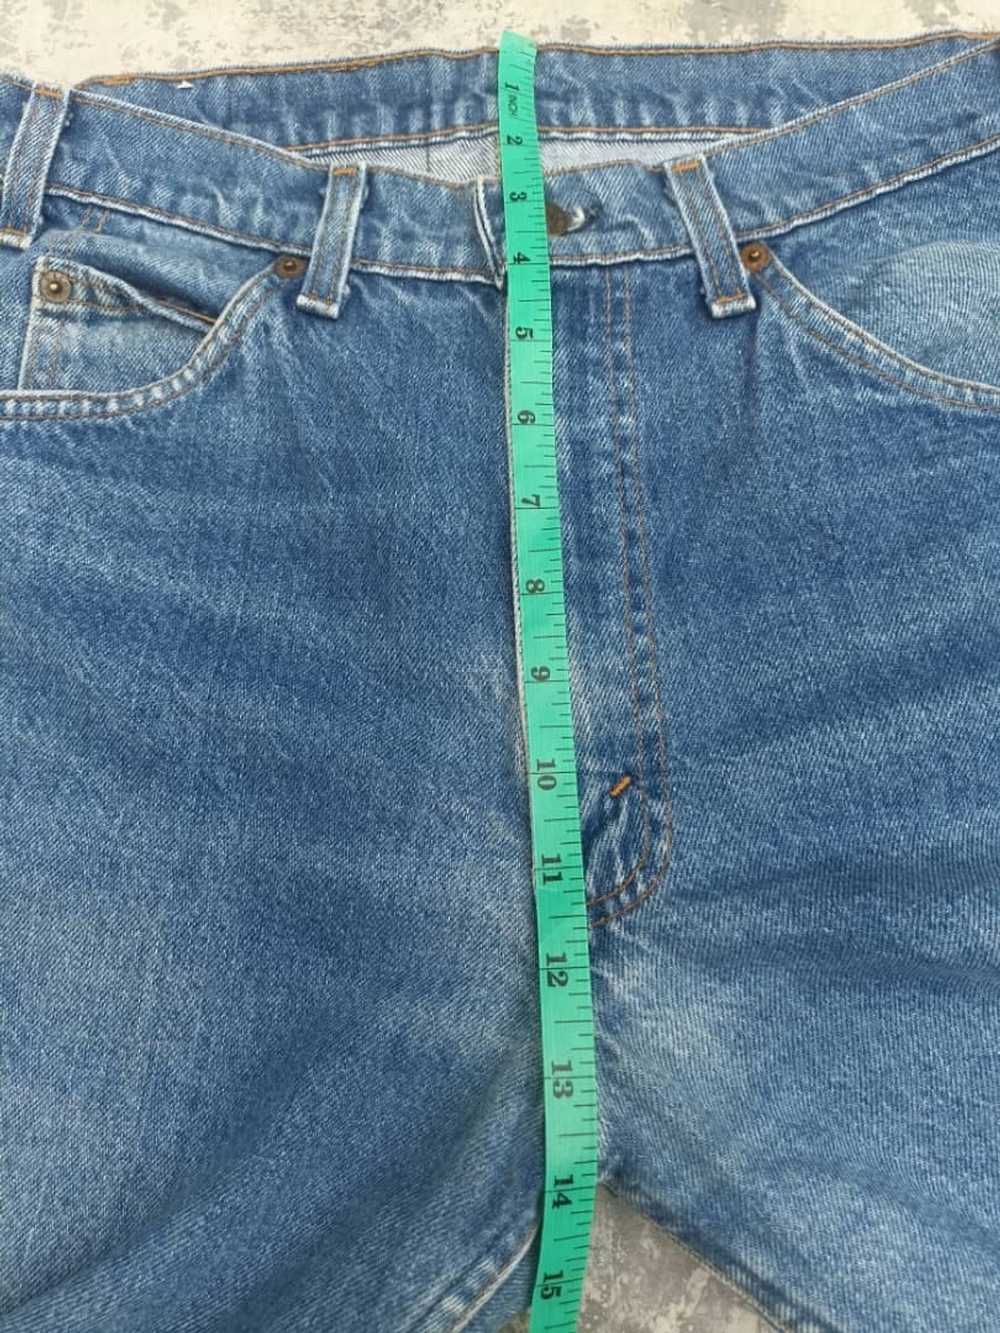 Levi's Vintage Levi's 505 orange tab jeans - image 9